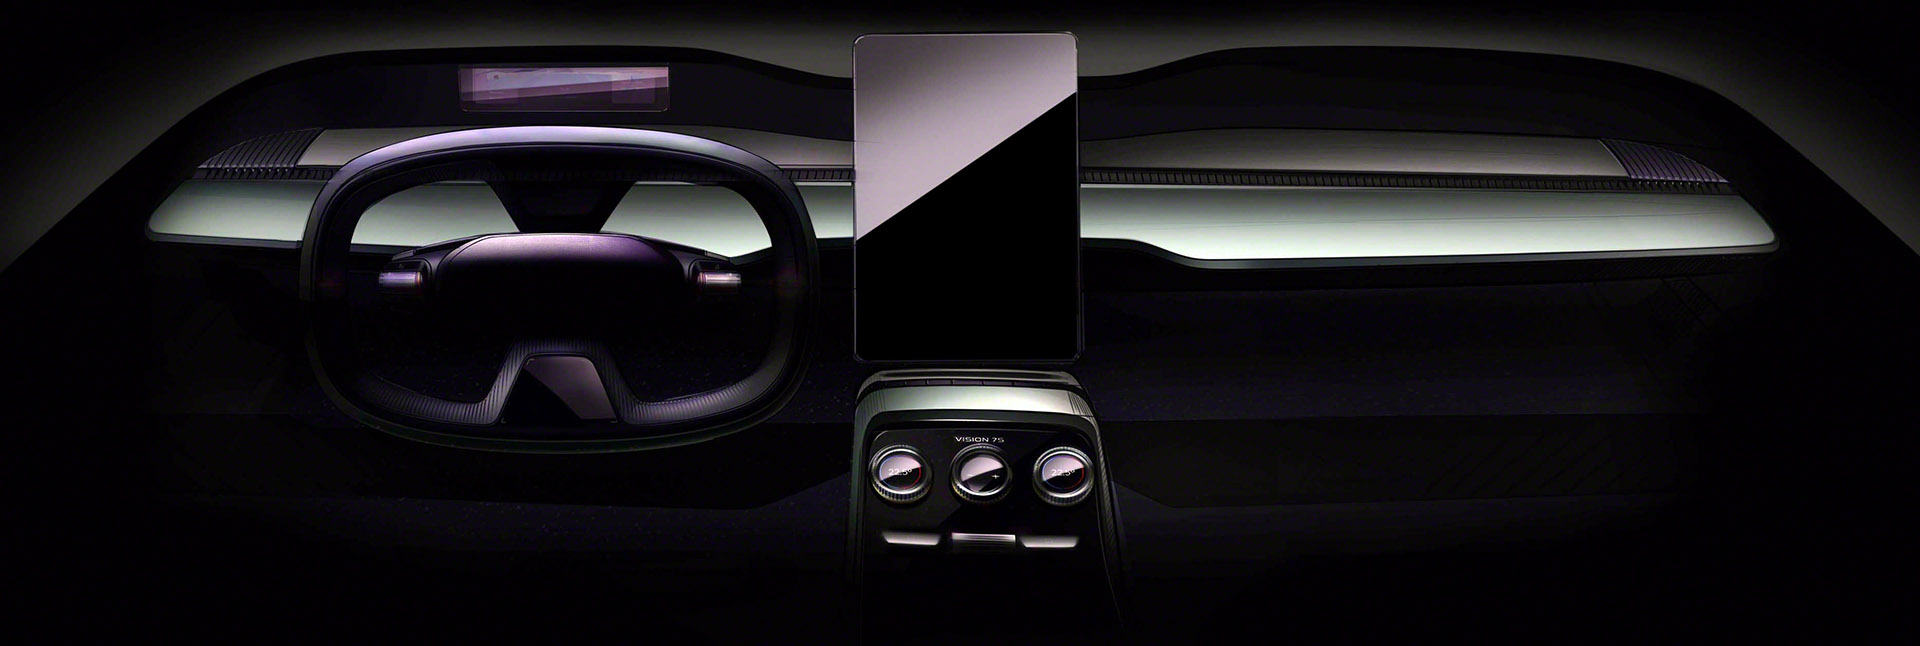 ŠKODA - kolejne detale wnętrza elektrycznego samochodu koncepcyjnego VISION 7S